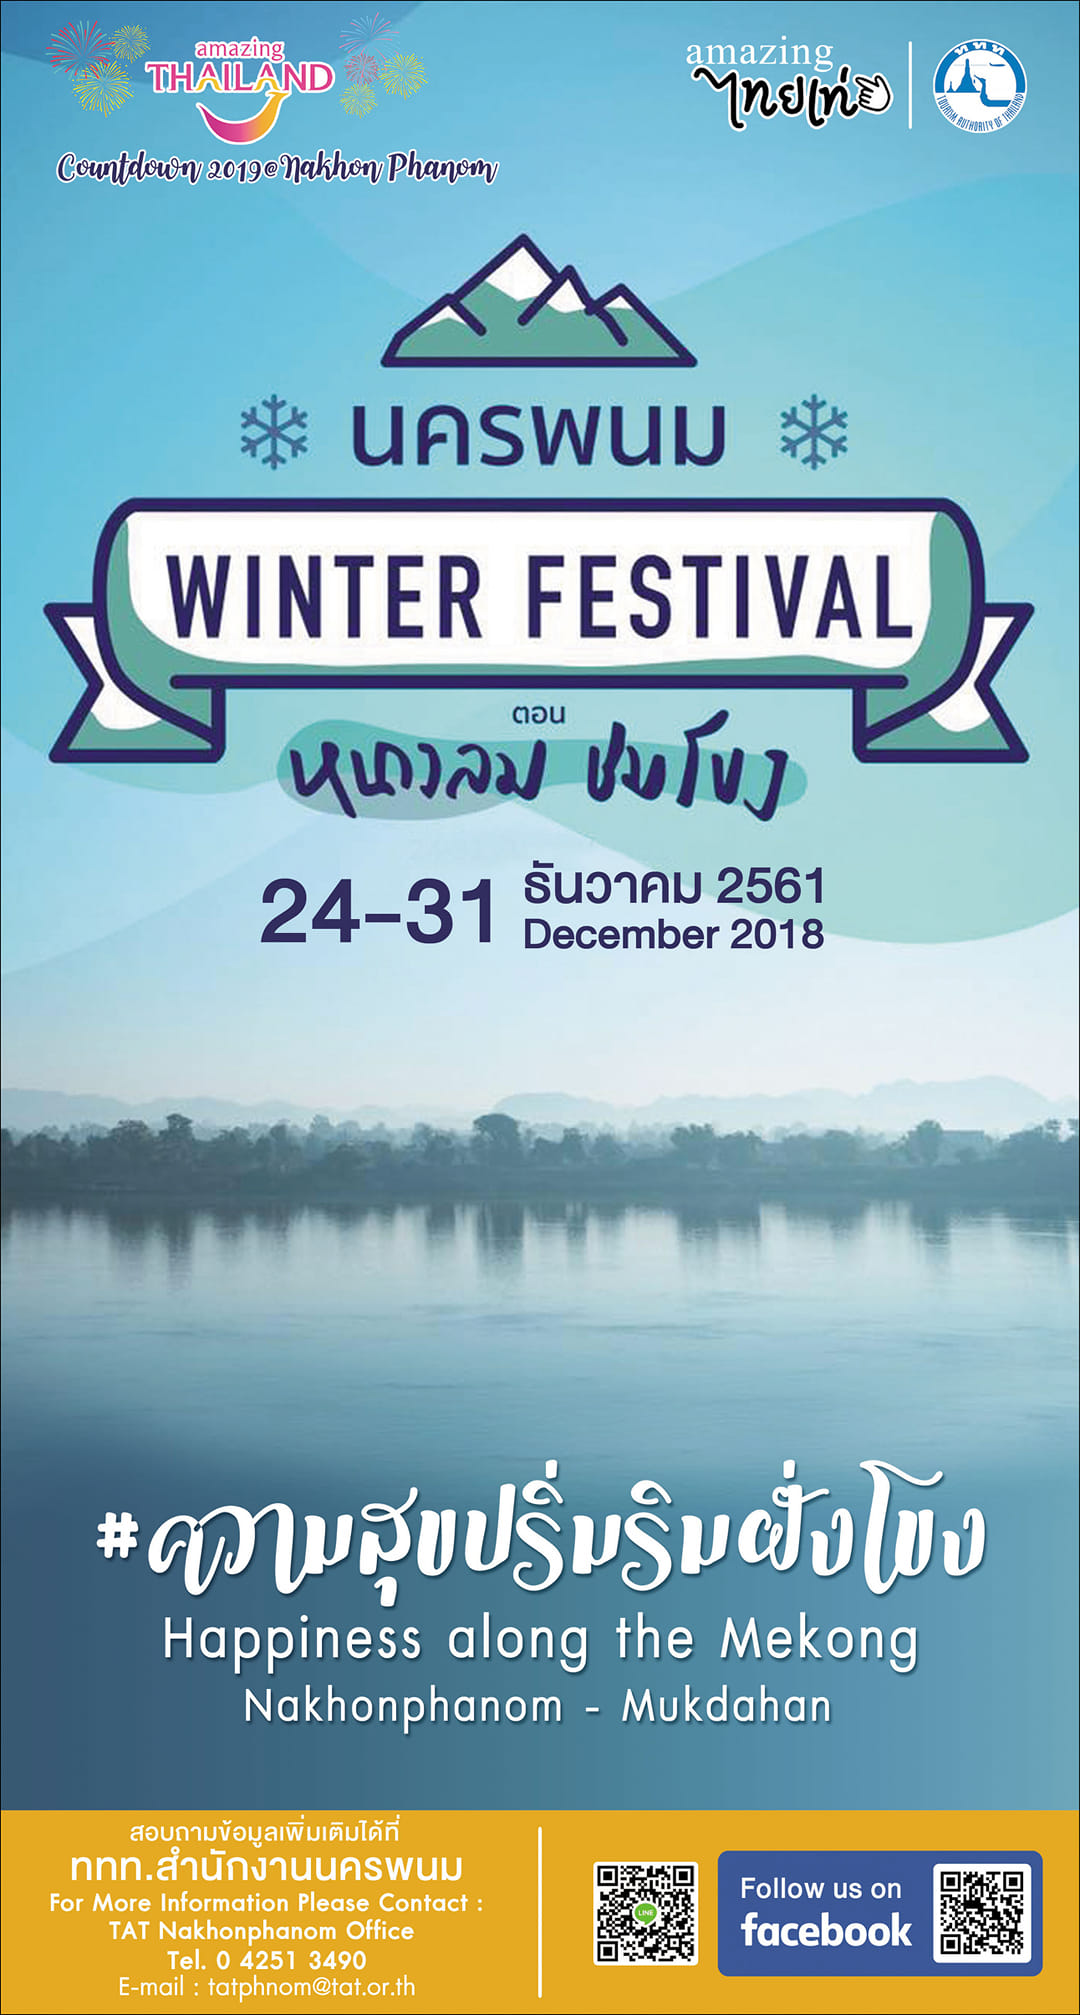 นครพนม Winter Festival ตอน หนาวลม ชมโขง 24-31 ธันวาคม 2561 จังหวัดนครพนม